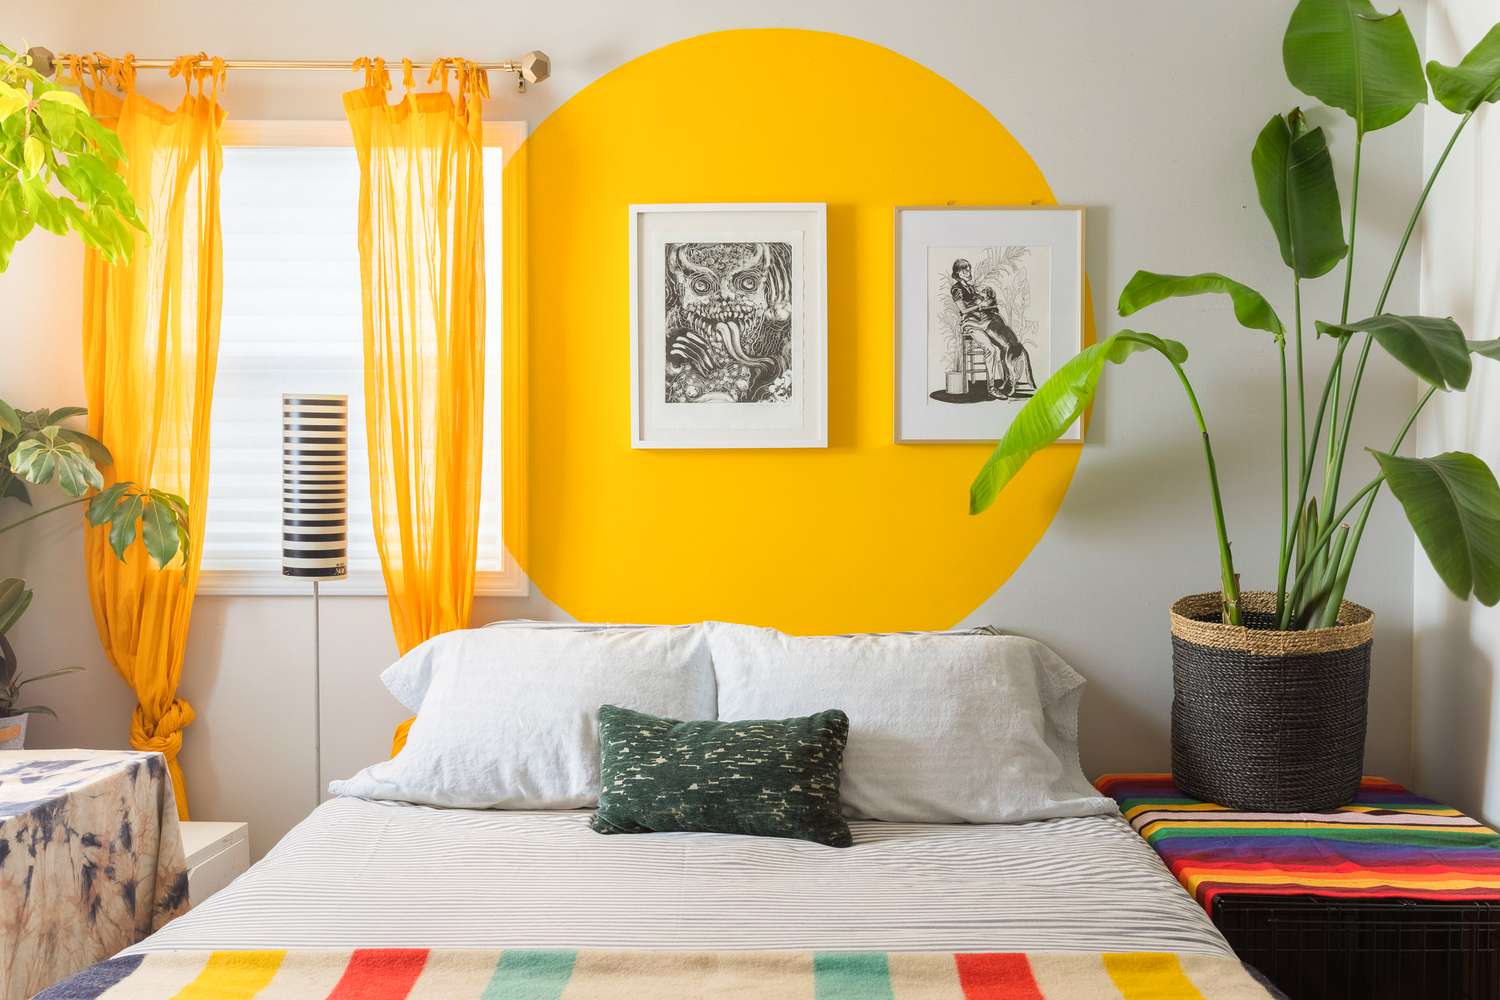 Dormitorio con un círculo amarillo brillante decorando la pared del fondo con dos obras de arte enmarcadas